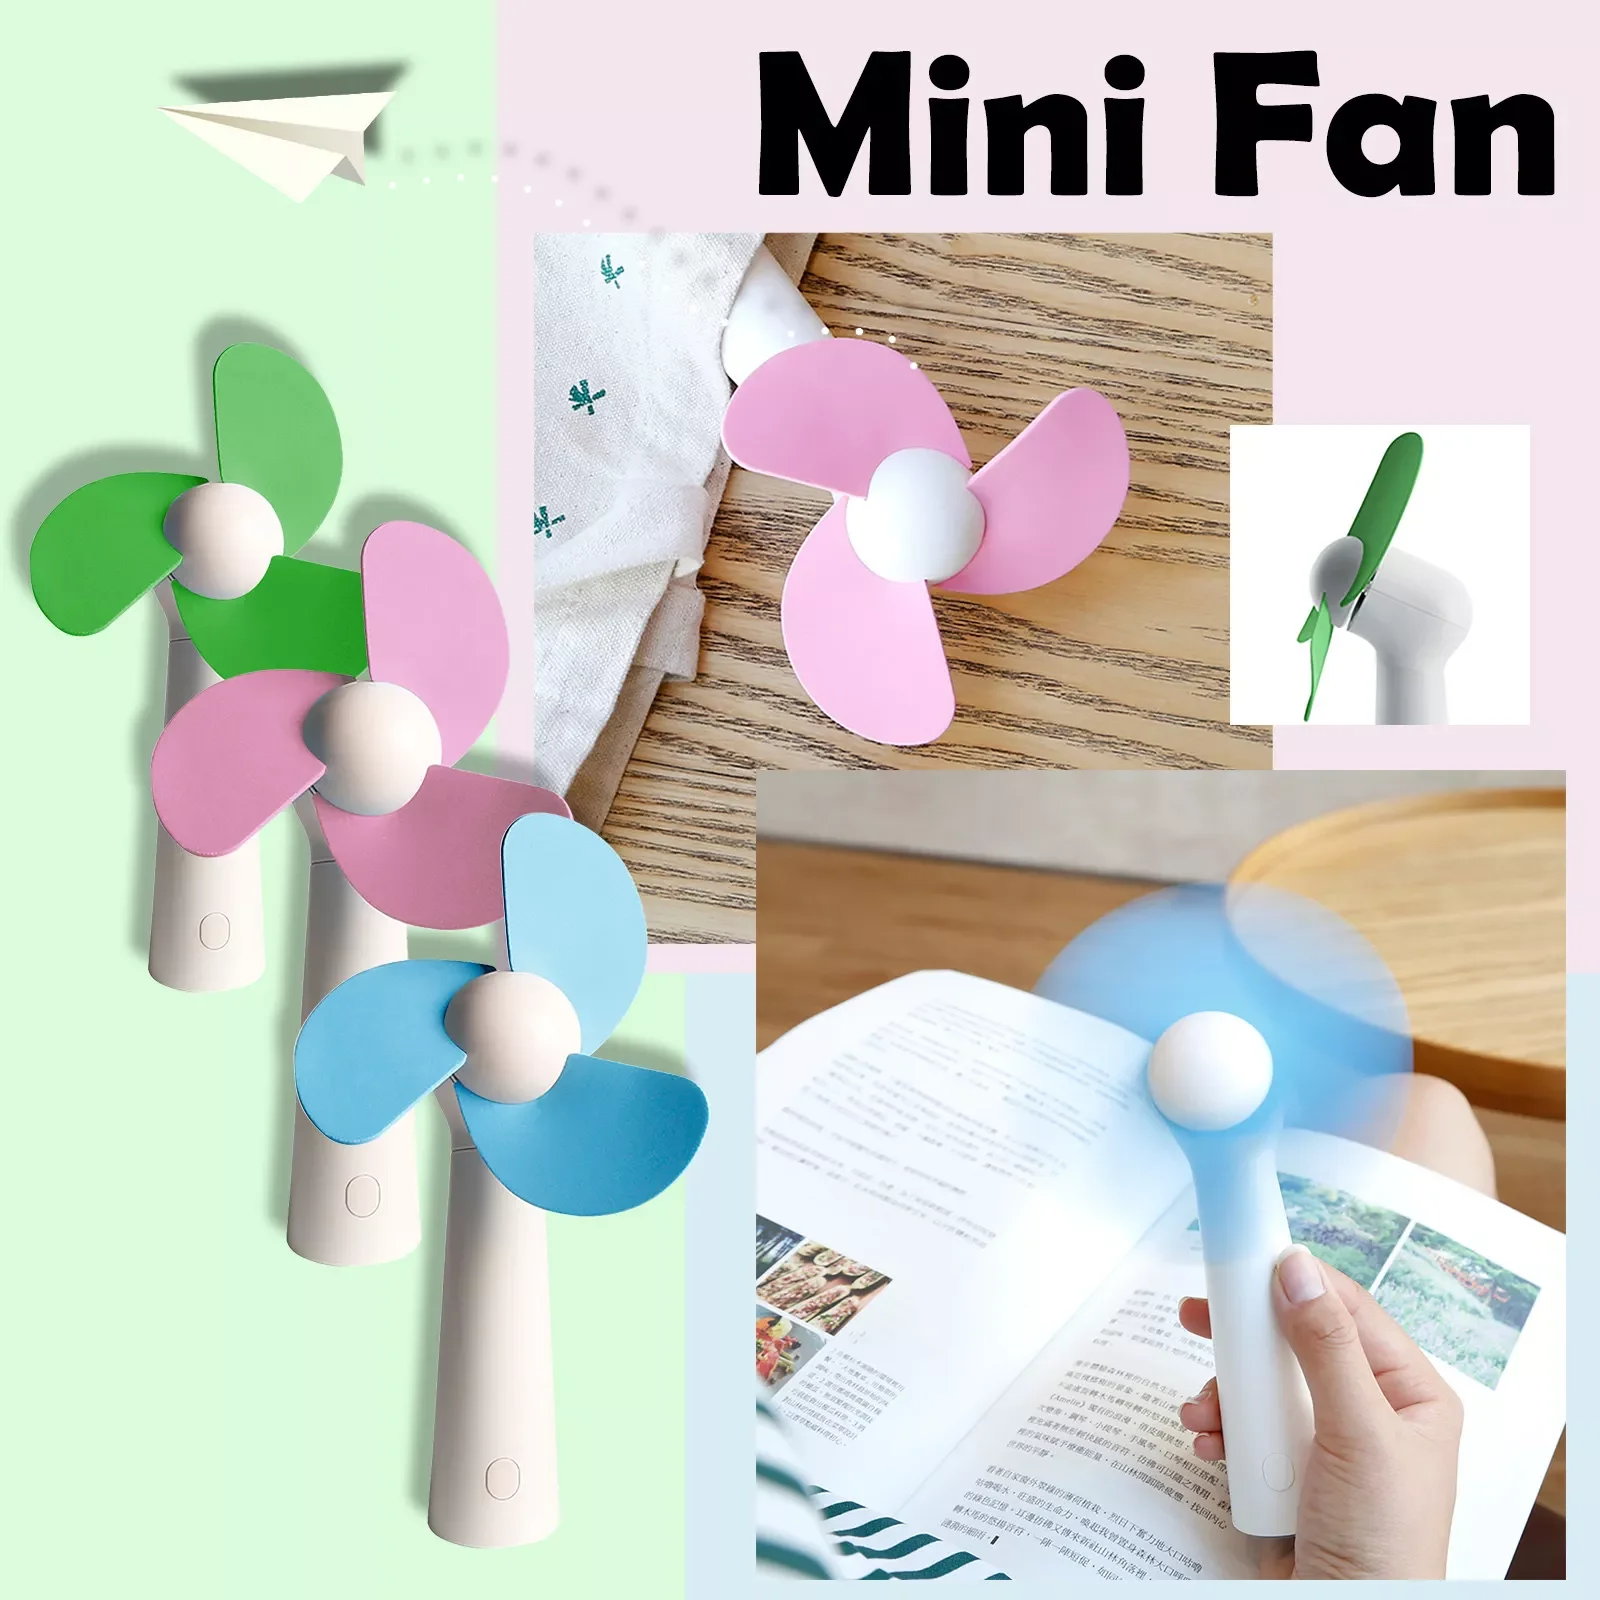 Mini Fan Portable Fan Handheld Usb Rechargeable Fan Appliances Desktop Air Cooler Outdoor Travel Hand Fan Desktop Silent#g4